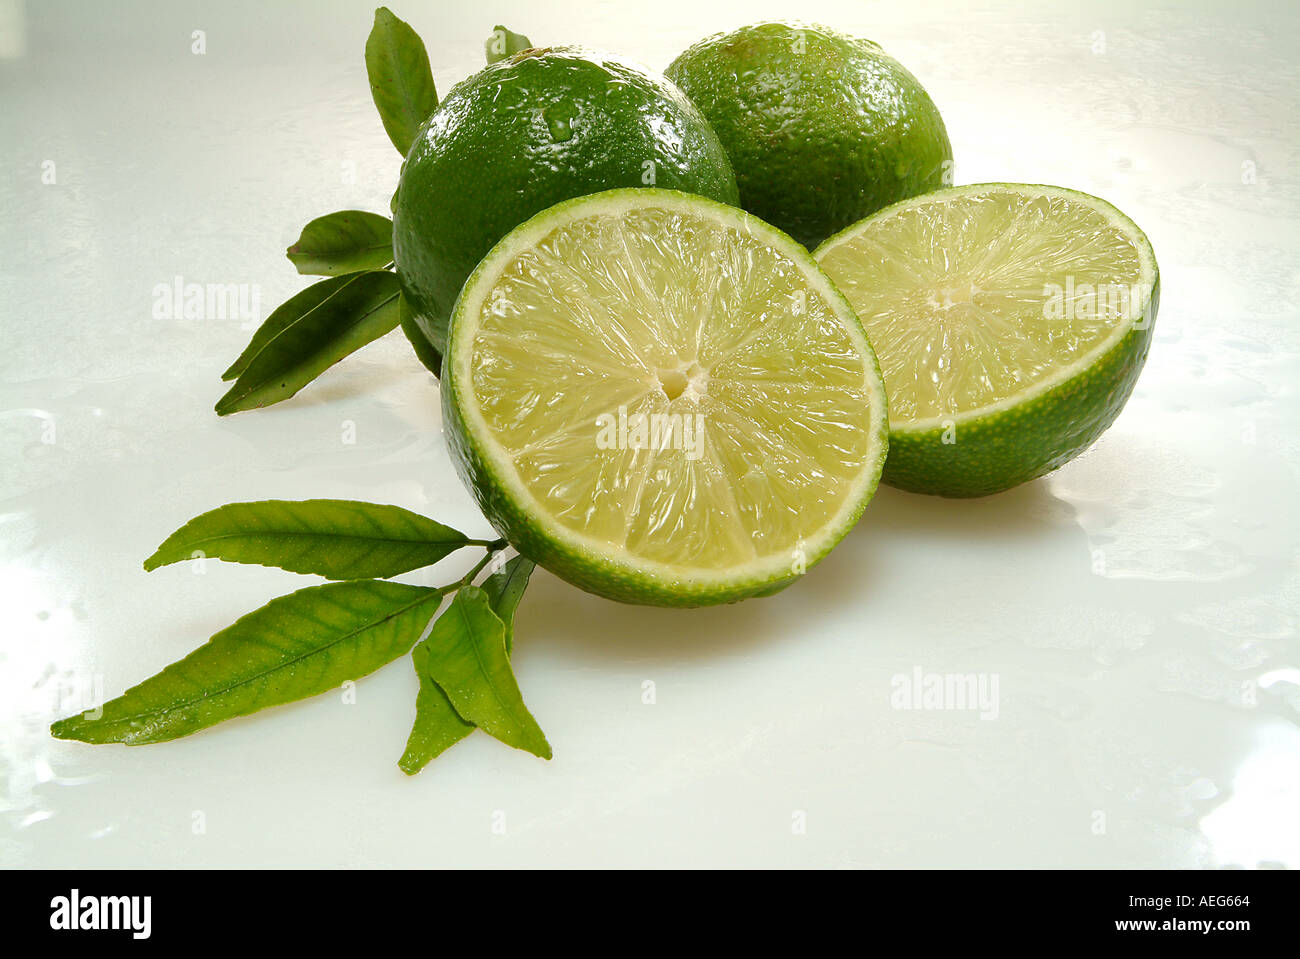 Obst und Gemüse, die Zitrone, die grüne Zitronen aufschneiden lässt stammen Segment Lebensmittel Obst sonstige Hintergrundtextur Stockfoto